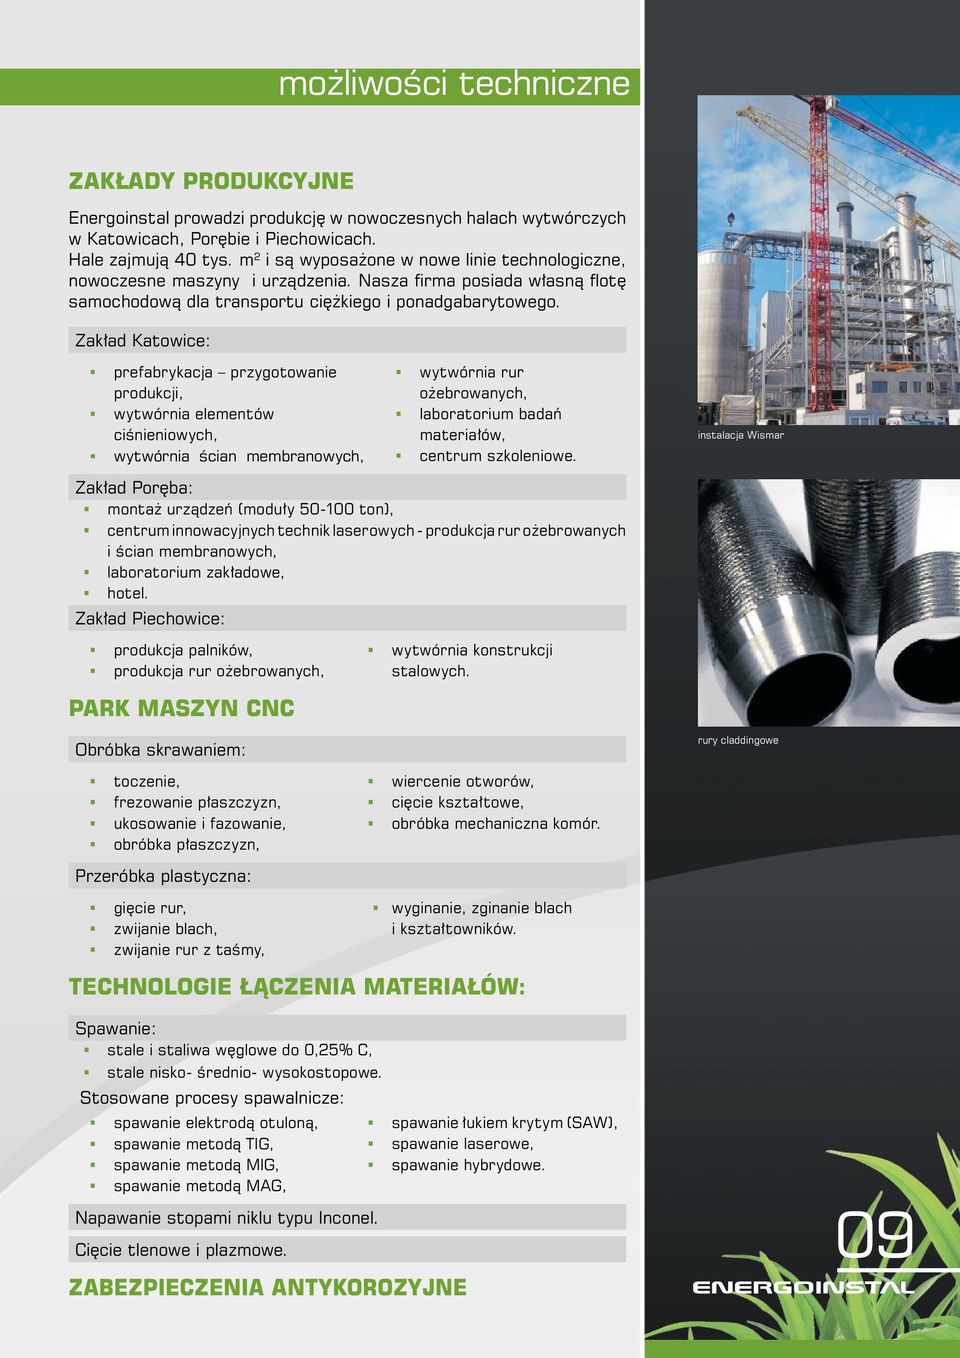 Zakład Katowice: prefabrykacja przygotowanie produkcji, wytwórnia elementów ciśnieniowych, wytwórnia ścian membranowych, wytwórnia rur ożebrowanych, laboratorium badań materiałów, centrum szkoleniowe.